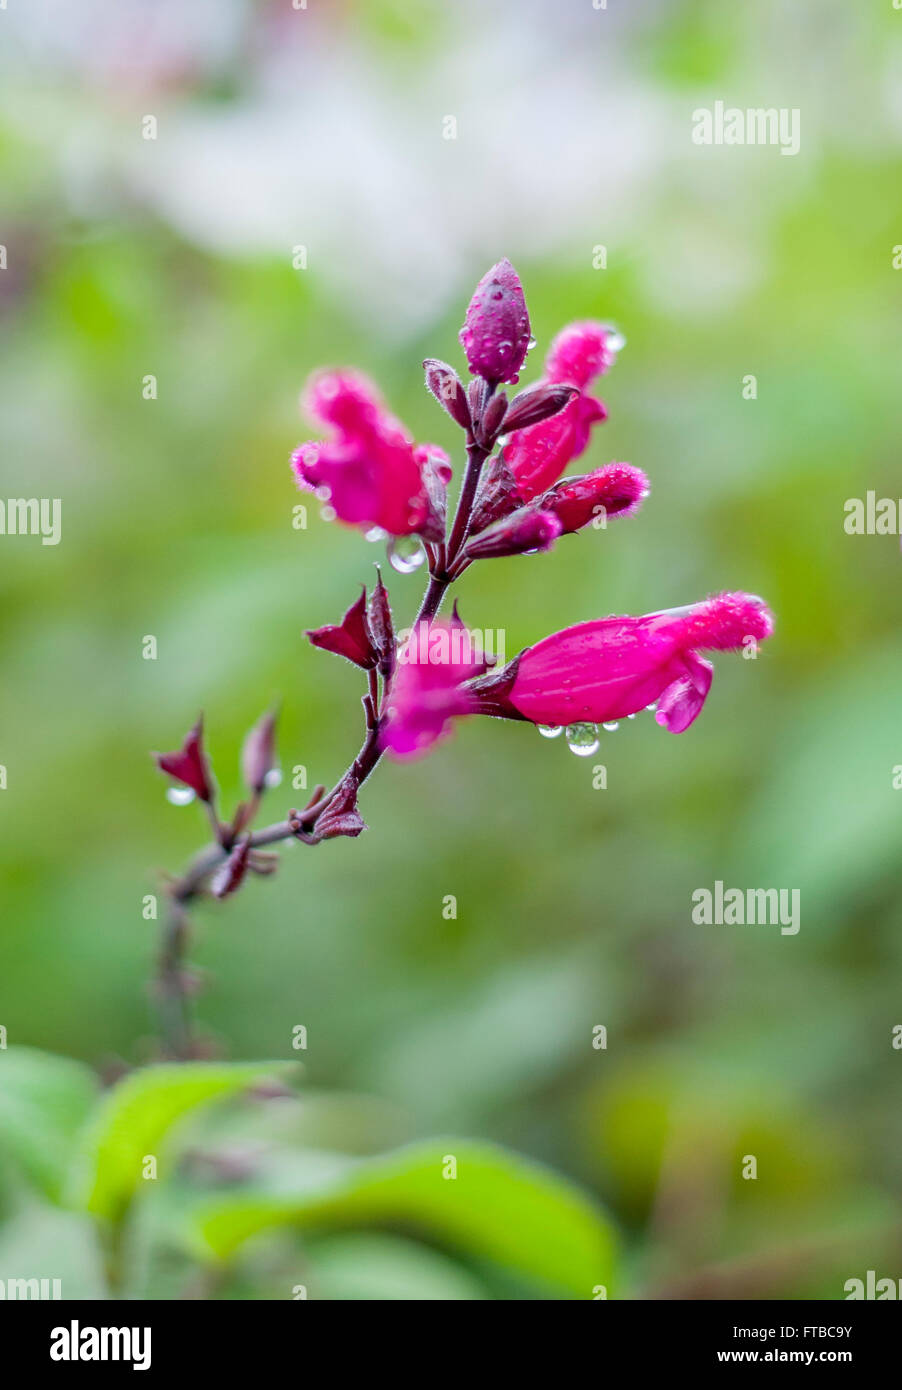 Jardin en fleur, pluie, résumé l'accent sur gouttes de pluie ; salvia involucrata Pink Blossoms, rosebud salvia w/ bokeh fond vert clair. Banque D'Images